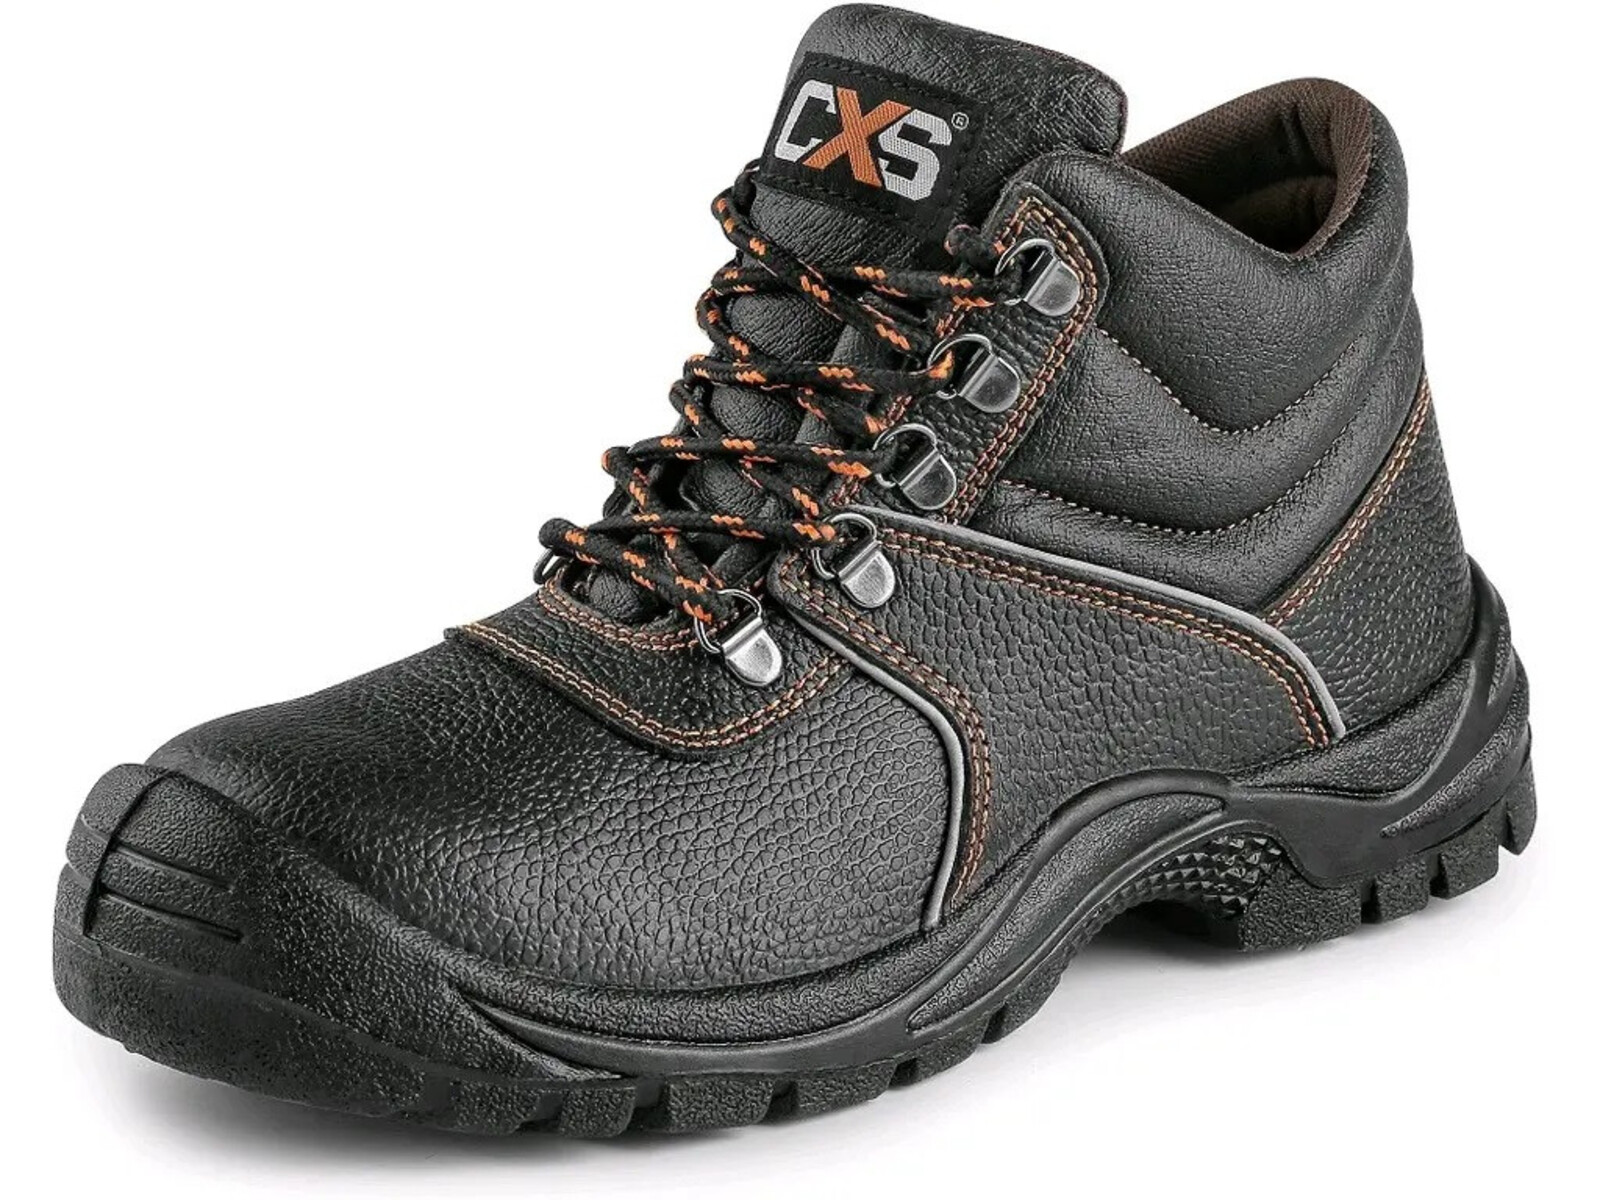 Bezpečnostná členková obuv CXS Stone Marble S3 SRC - veľkosť: 40, farba: čierna/oranžová